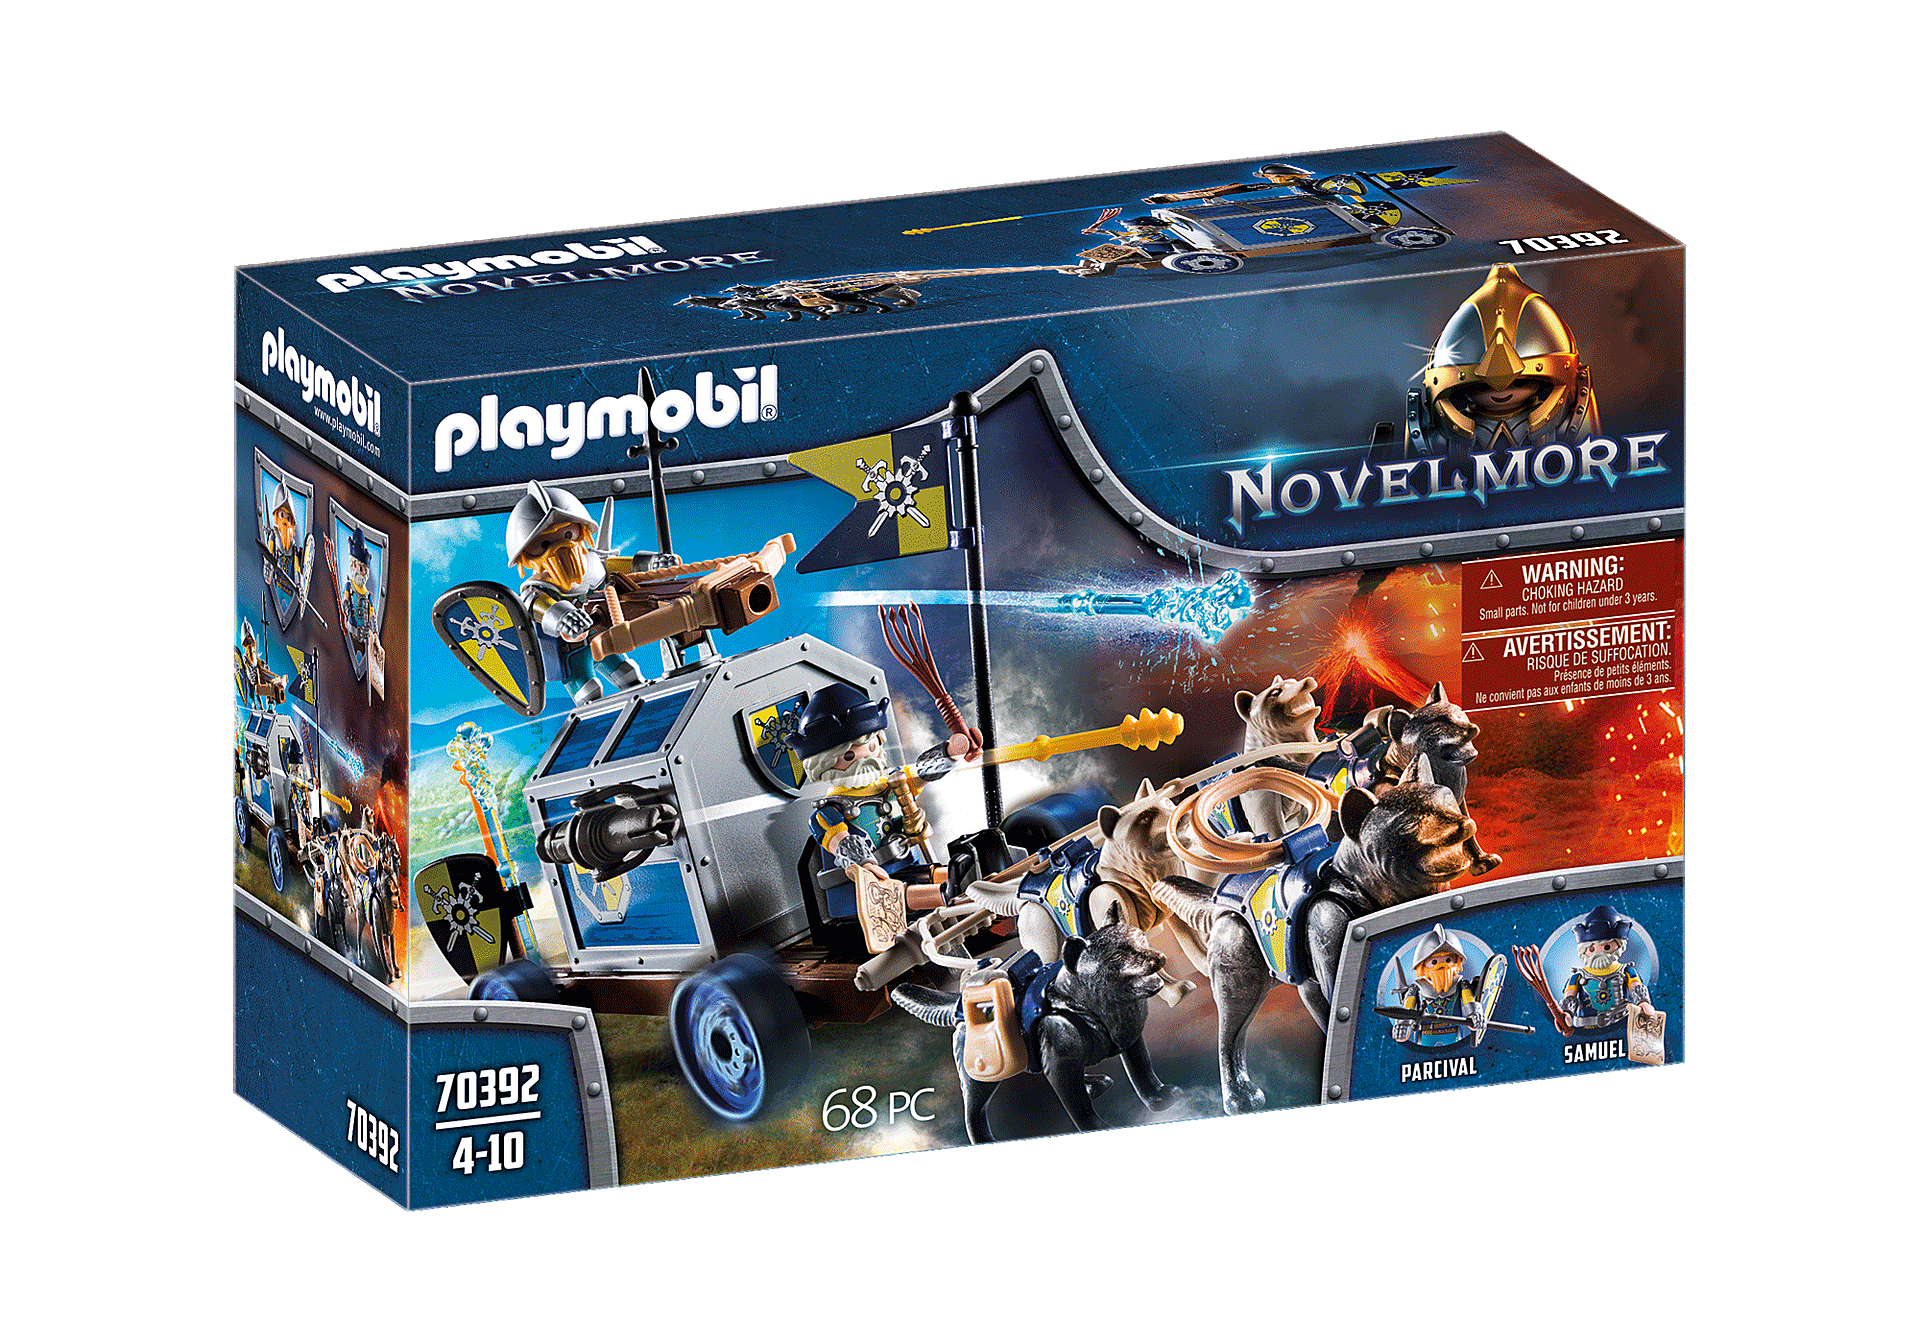 Playmobil - Novelmore Treasure Transport (70392)